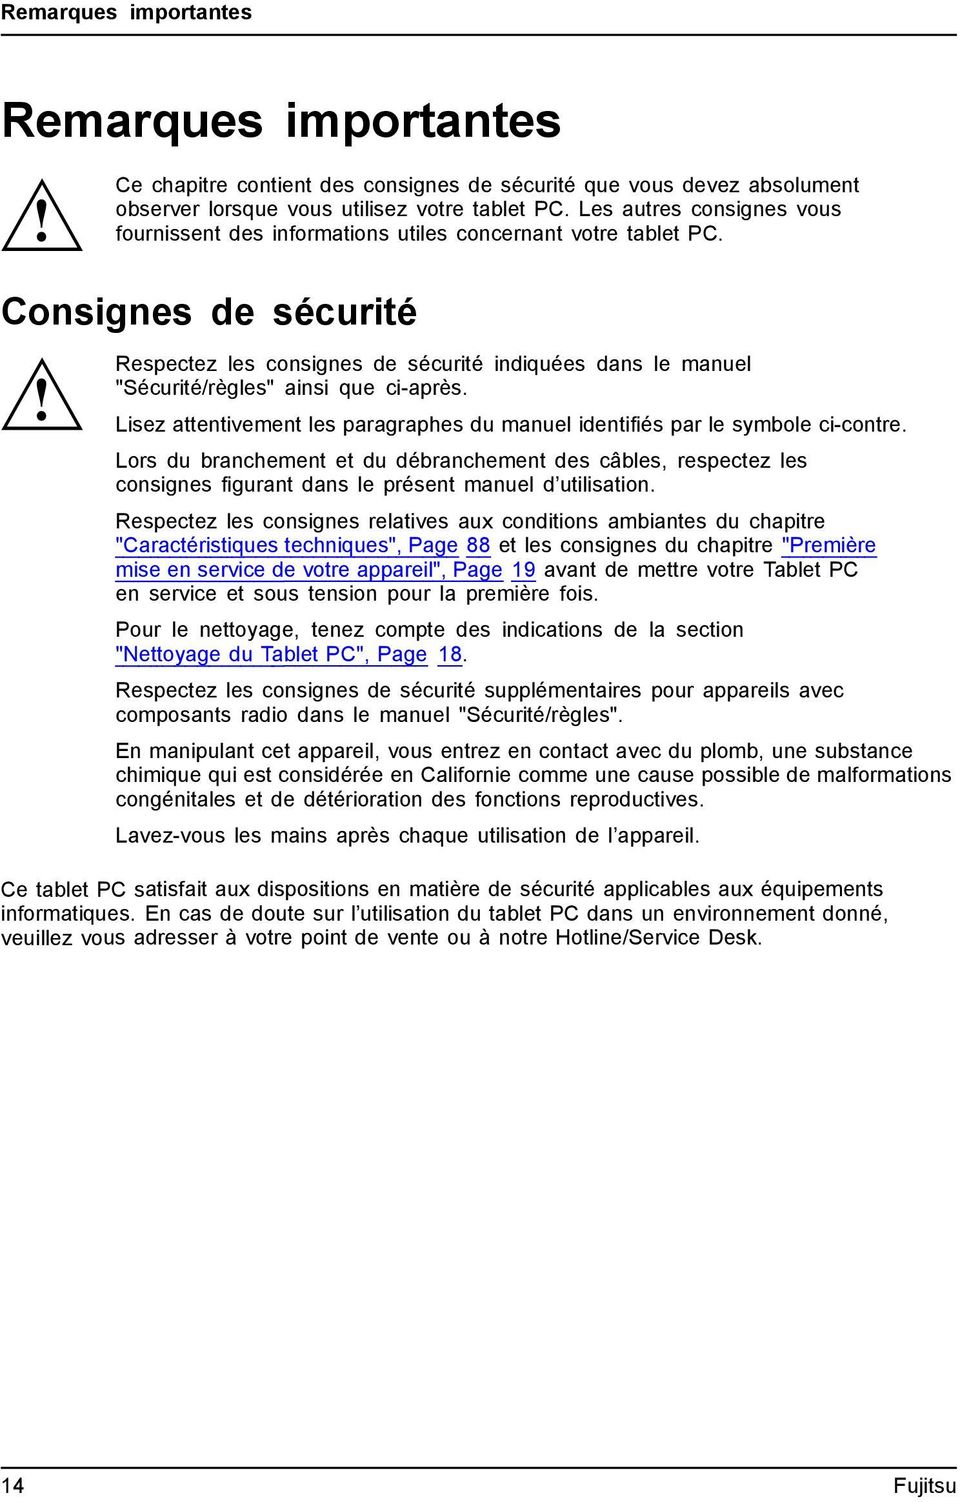 Consignes de sécurité Respectez les consignes de sécurité indiquées dans le manuel "Sécurité/règles" ainsi que ci-après.